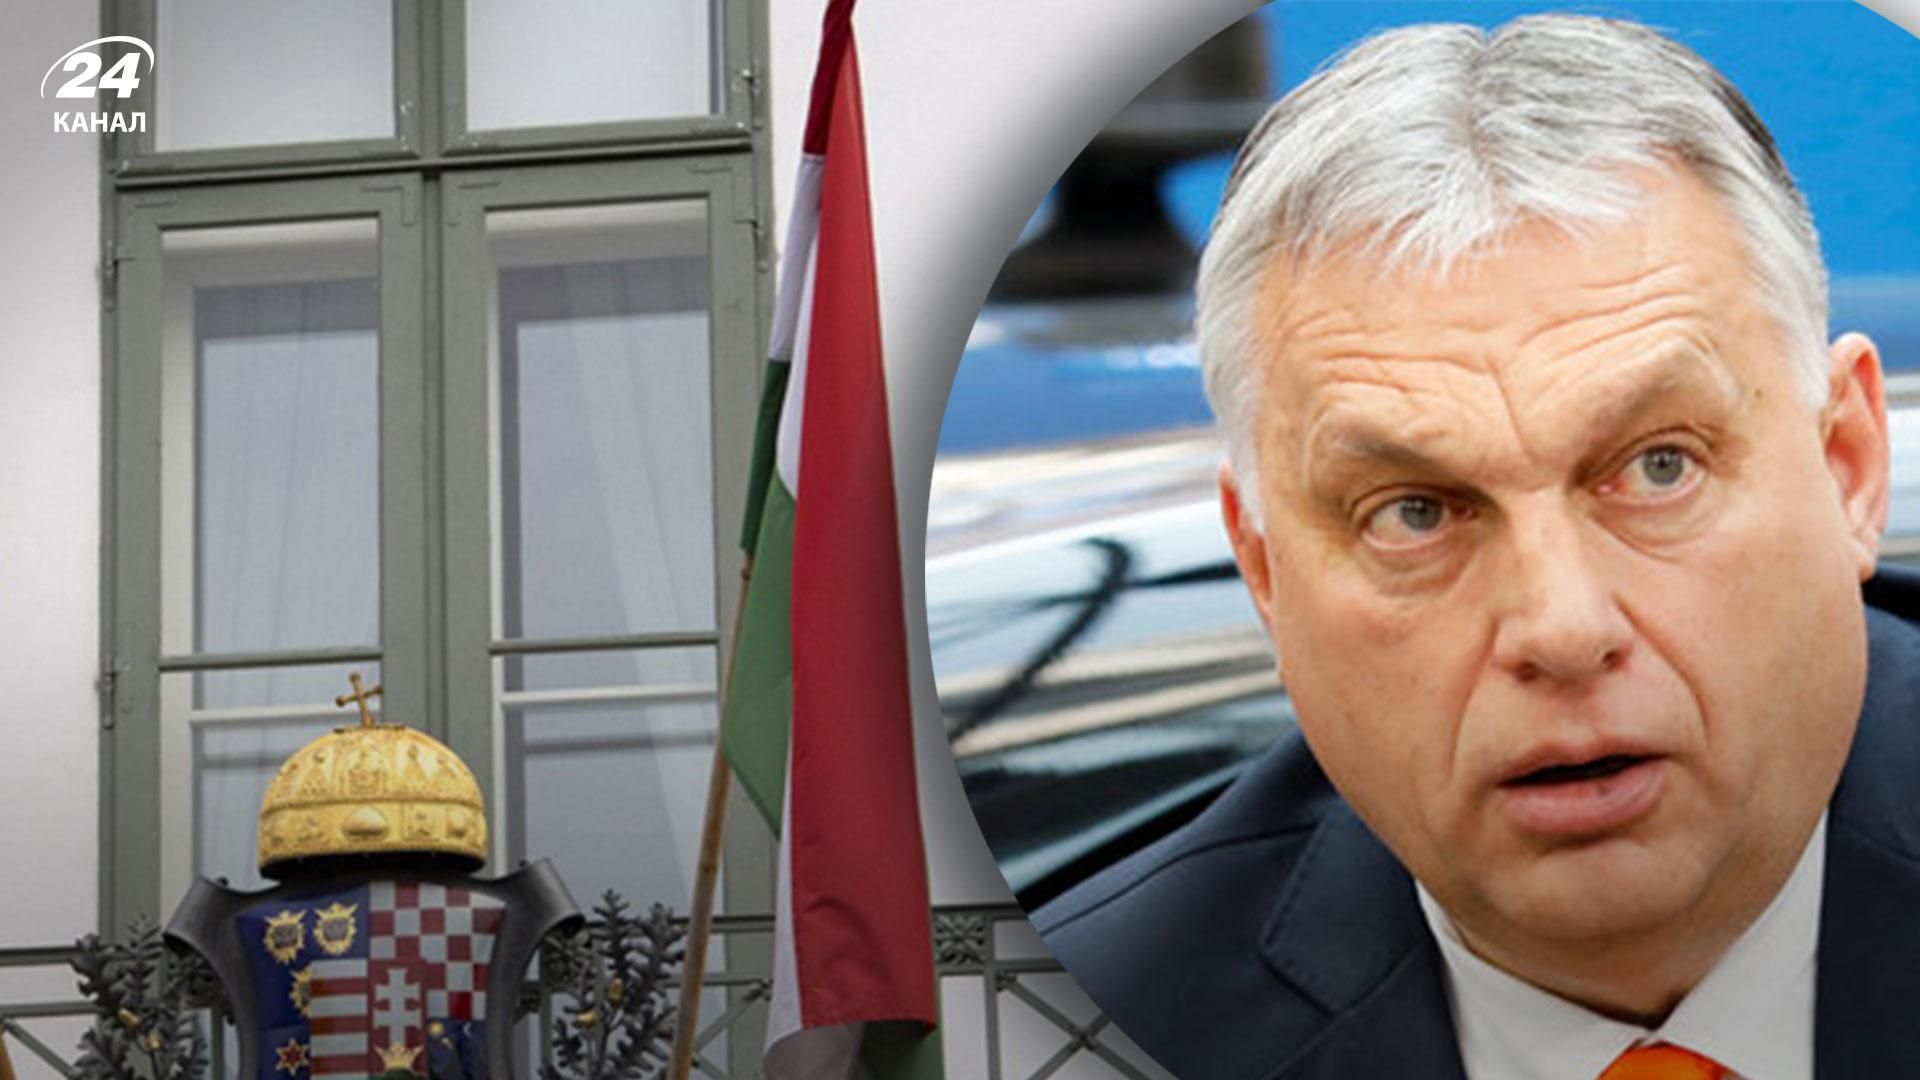 "Чтобы смягчить последствия": в посольстве Венгрии объяснили введение в стране чрезвычайного положения